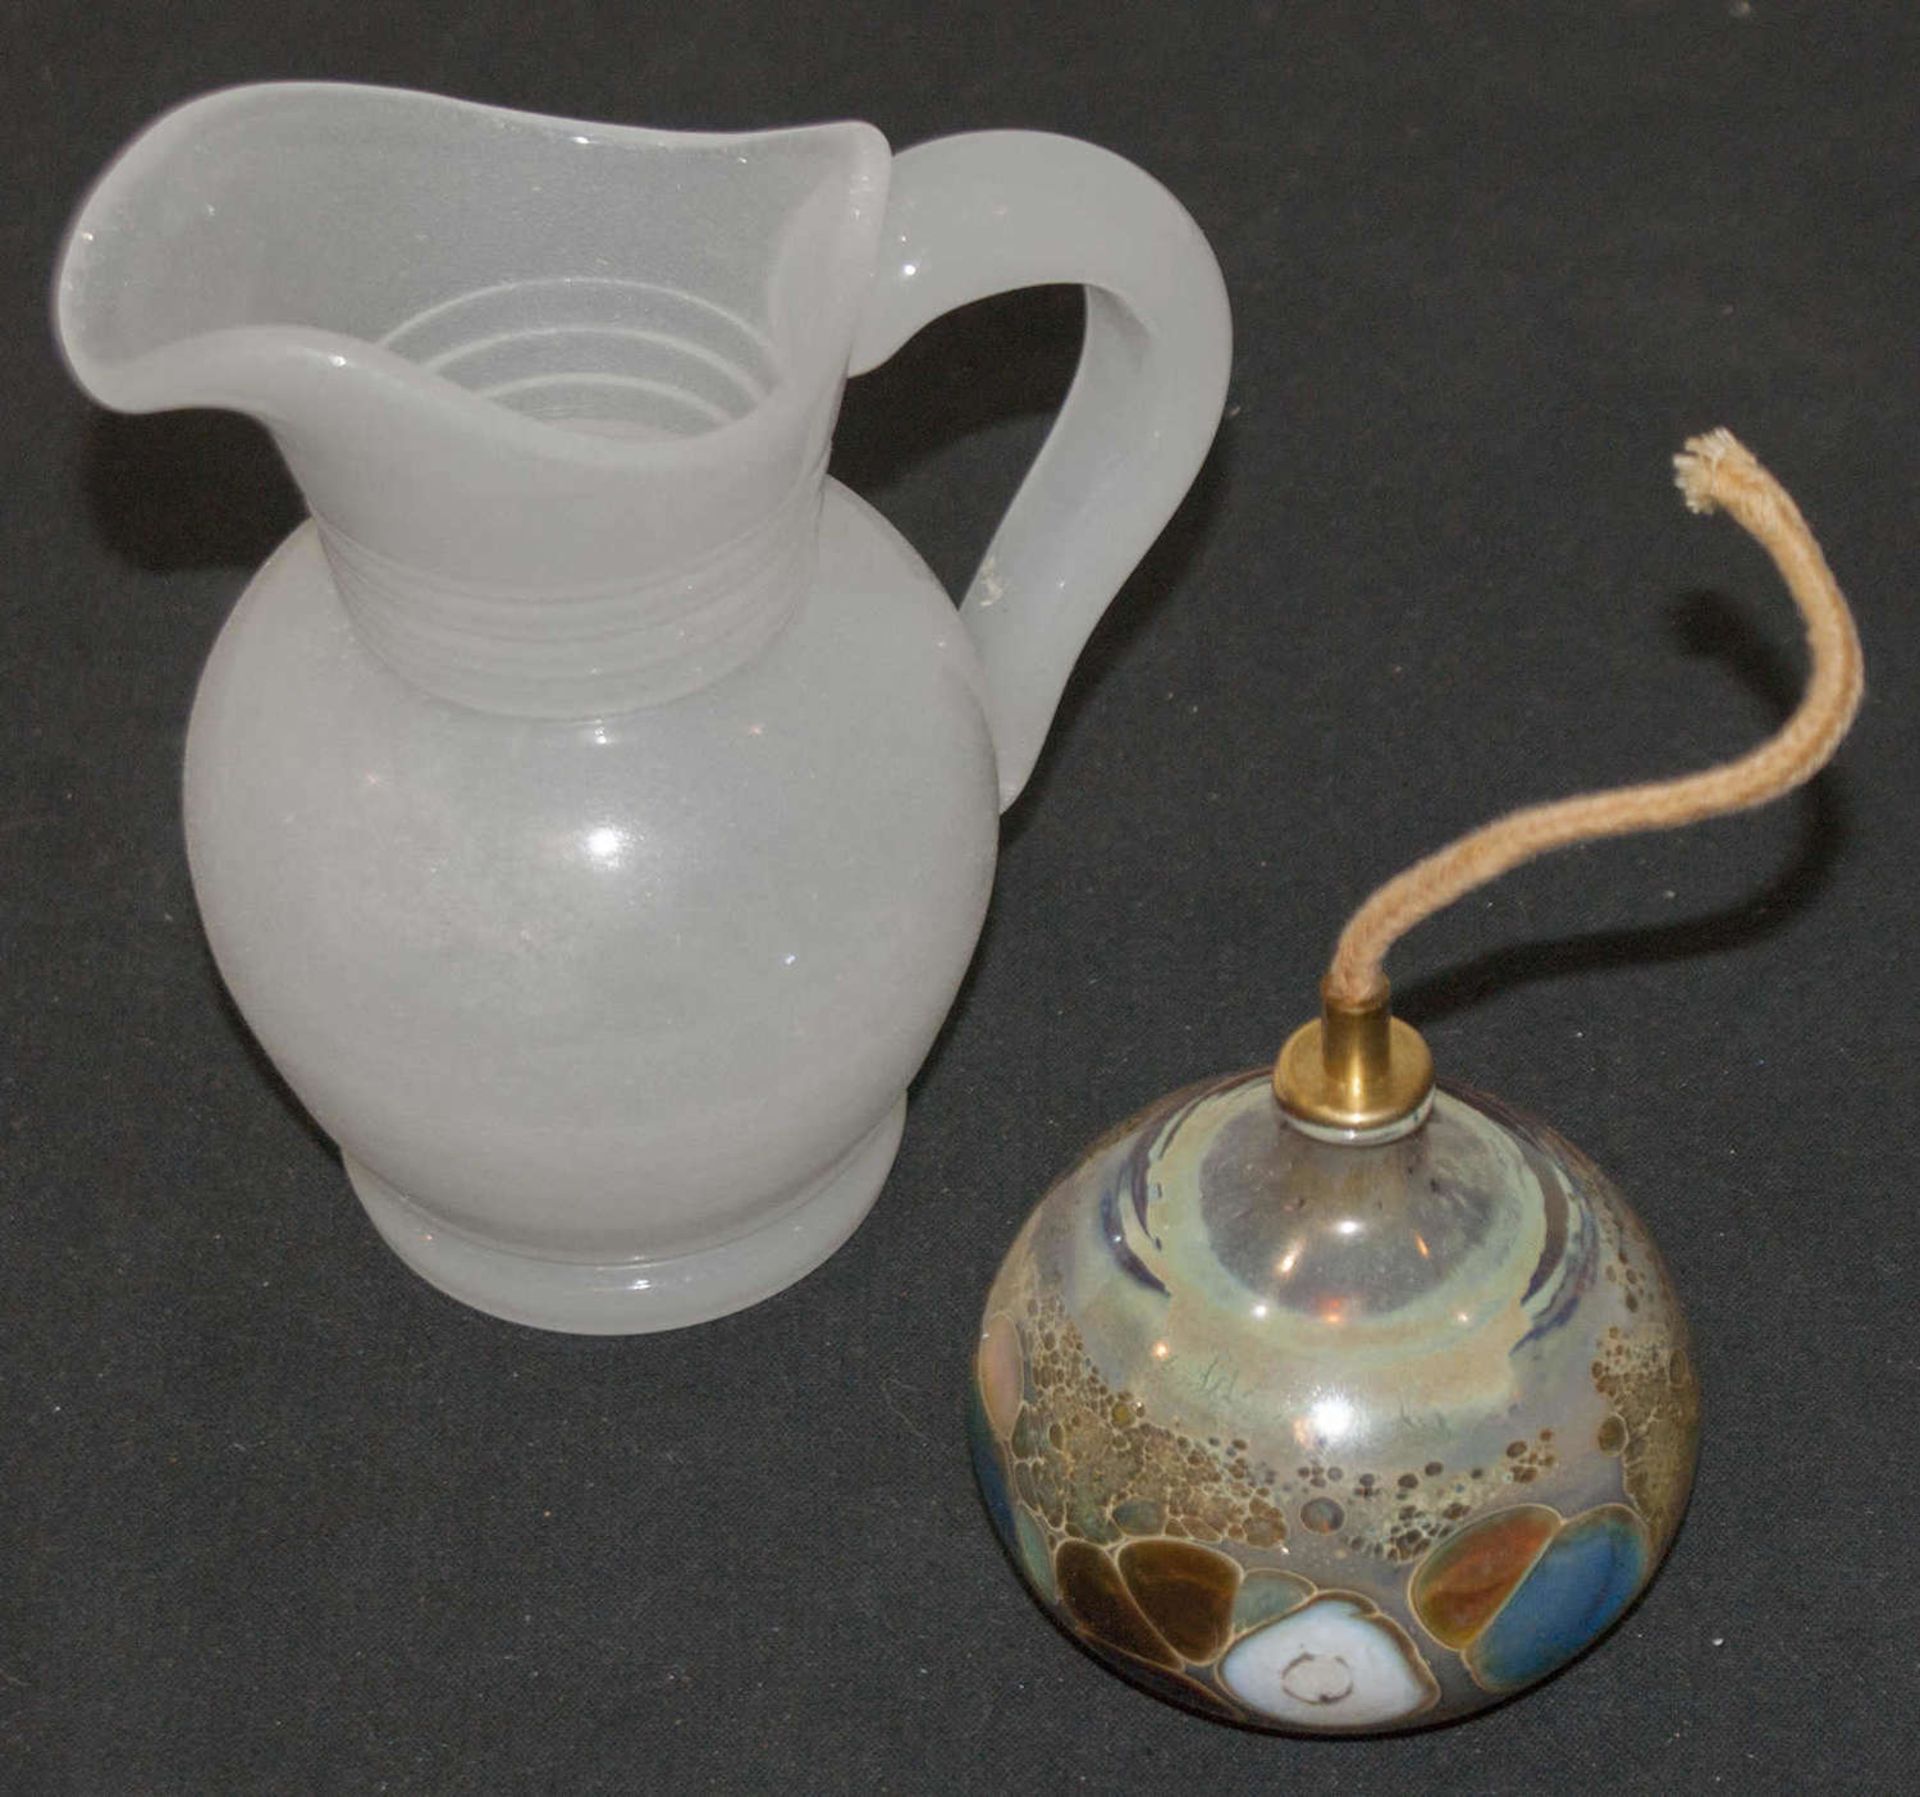 2 Teile Glas, 1 kleine Öllampe, Mundgeblasen sowie 1 Schenkkanne, Milchglas, diese höhe ca. 14 cm2